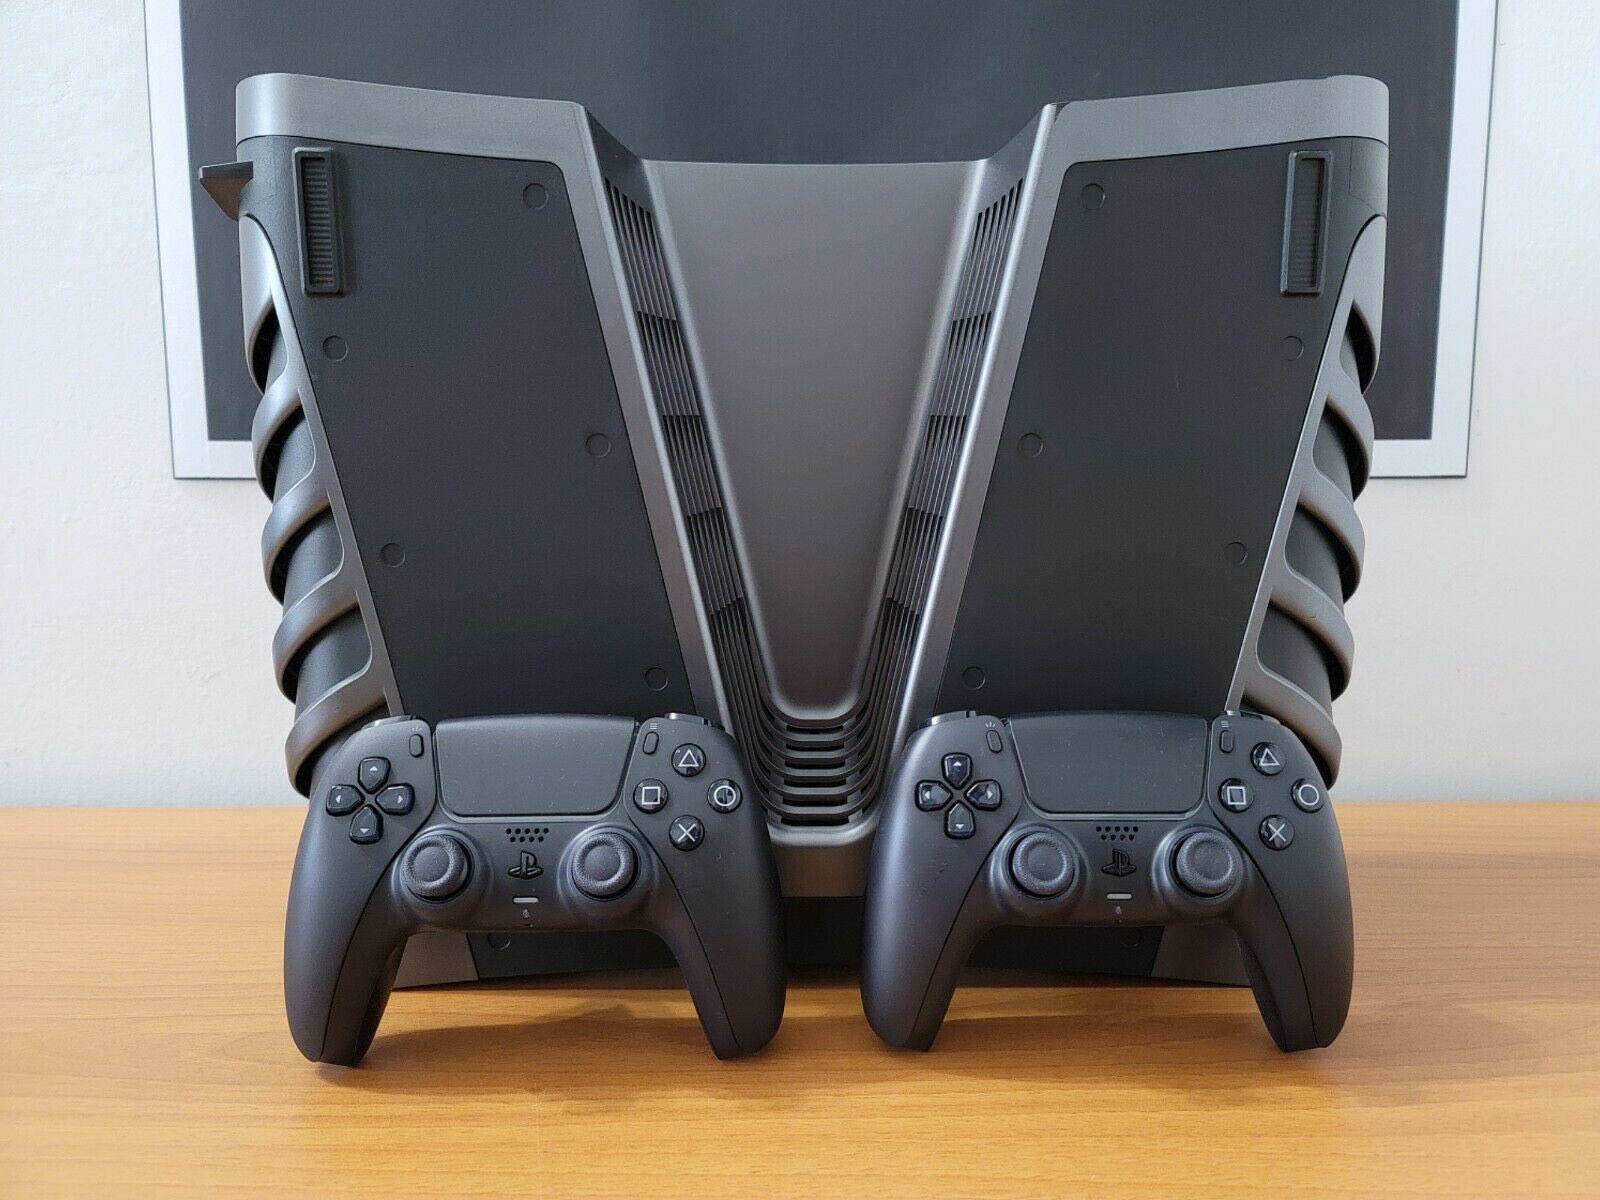 Protótipos do PlayStation 5 aparecem no eBay por R$ 17,4 mil